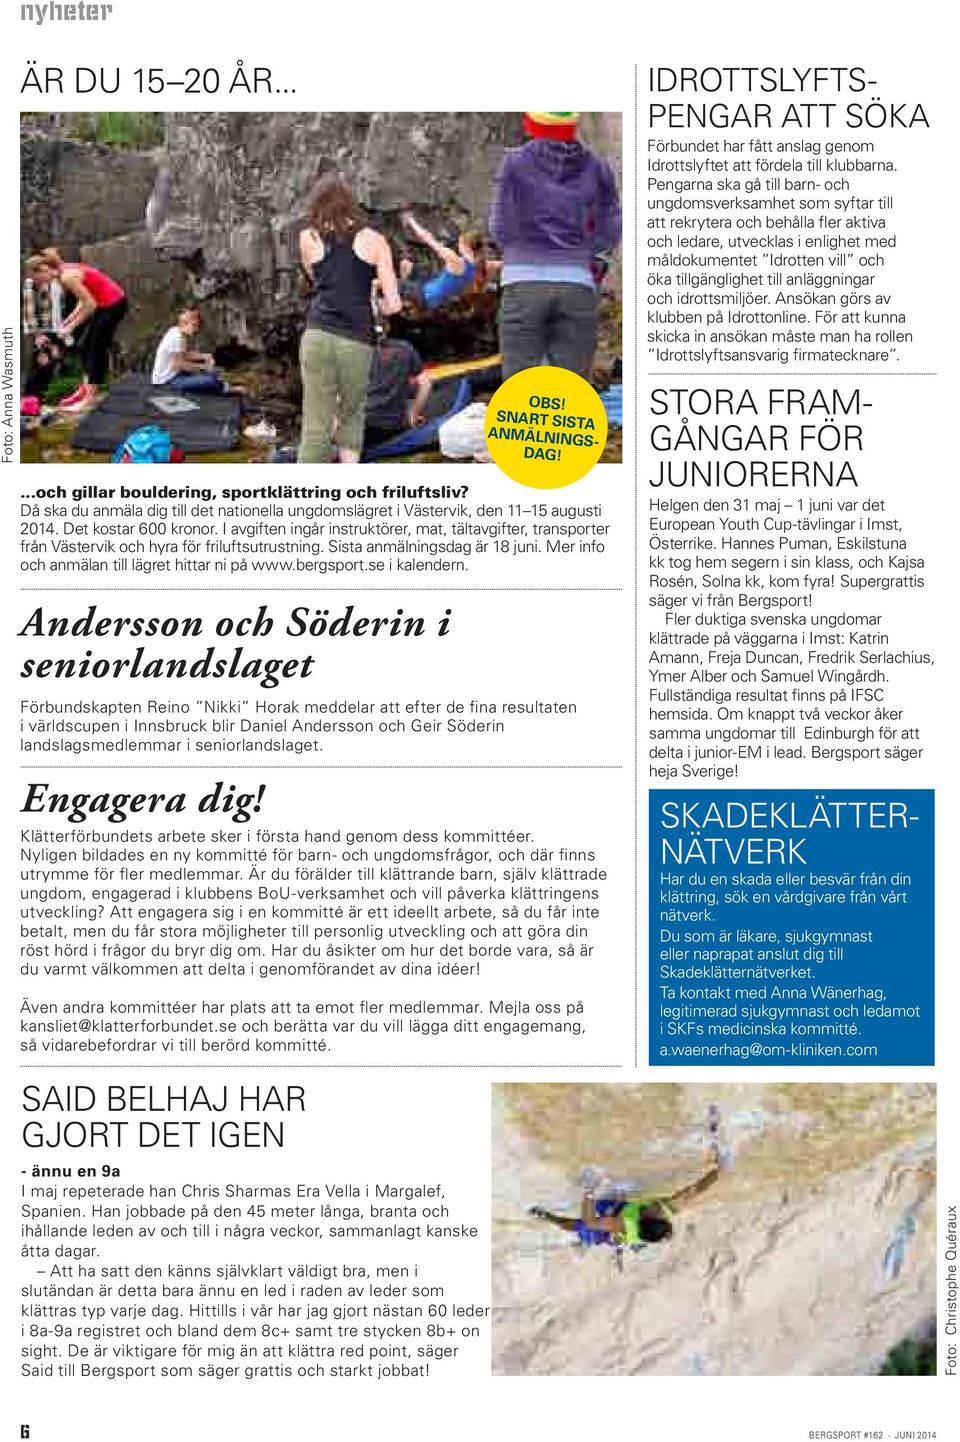 Mer info och anmälan till lägret hittar ni på www.bergsport.se i kalendern. Andersson och Söderin i seniorlandslaget Engagera dig!